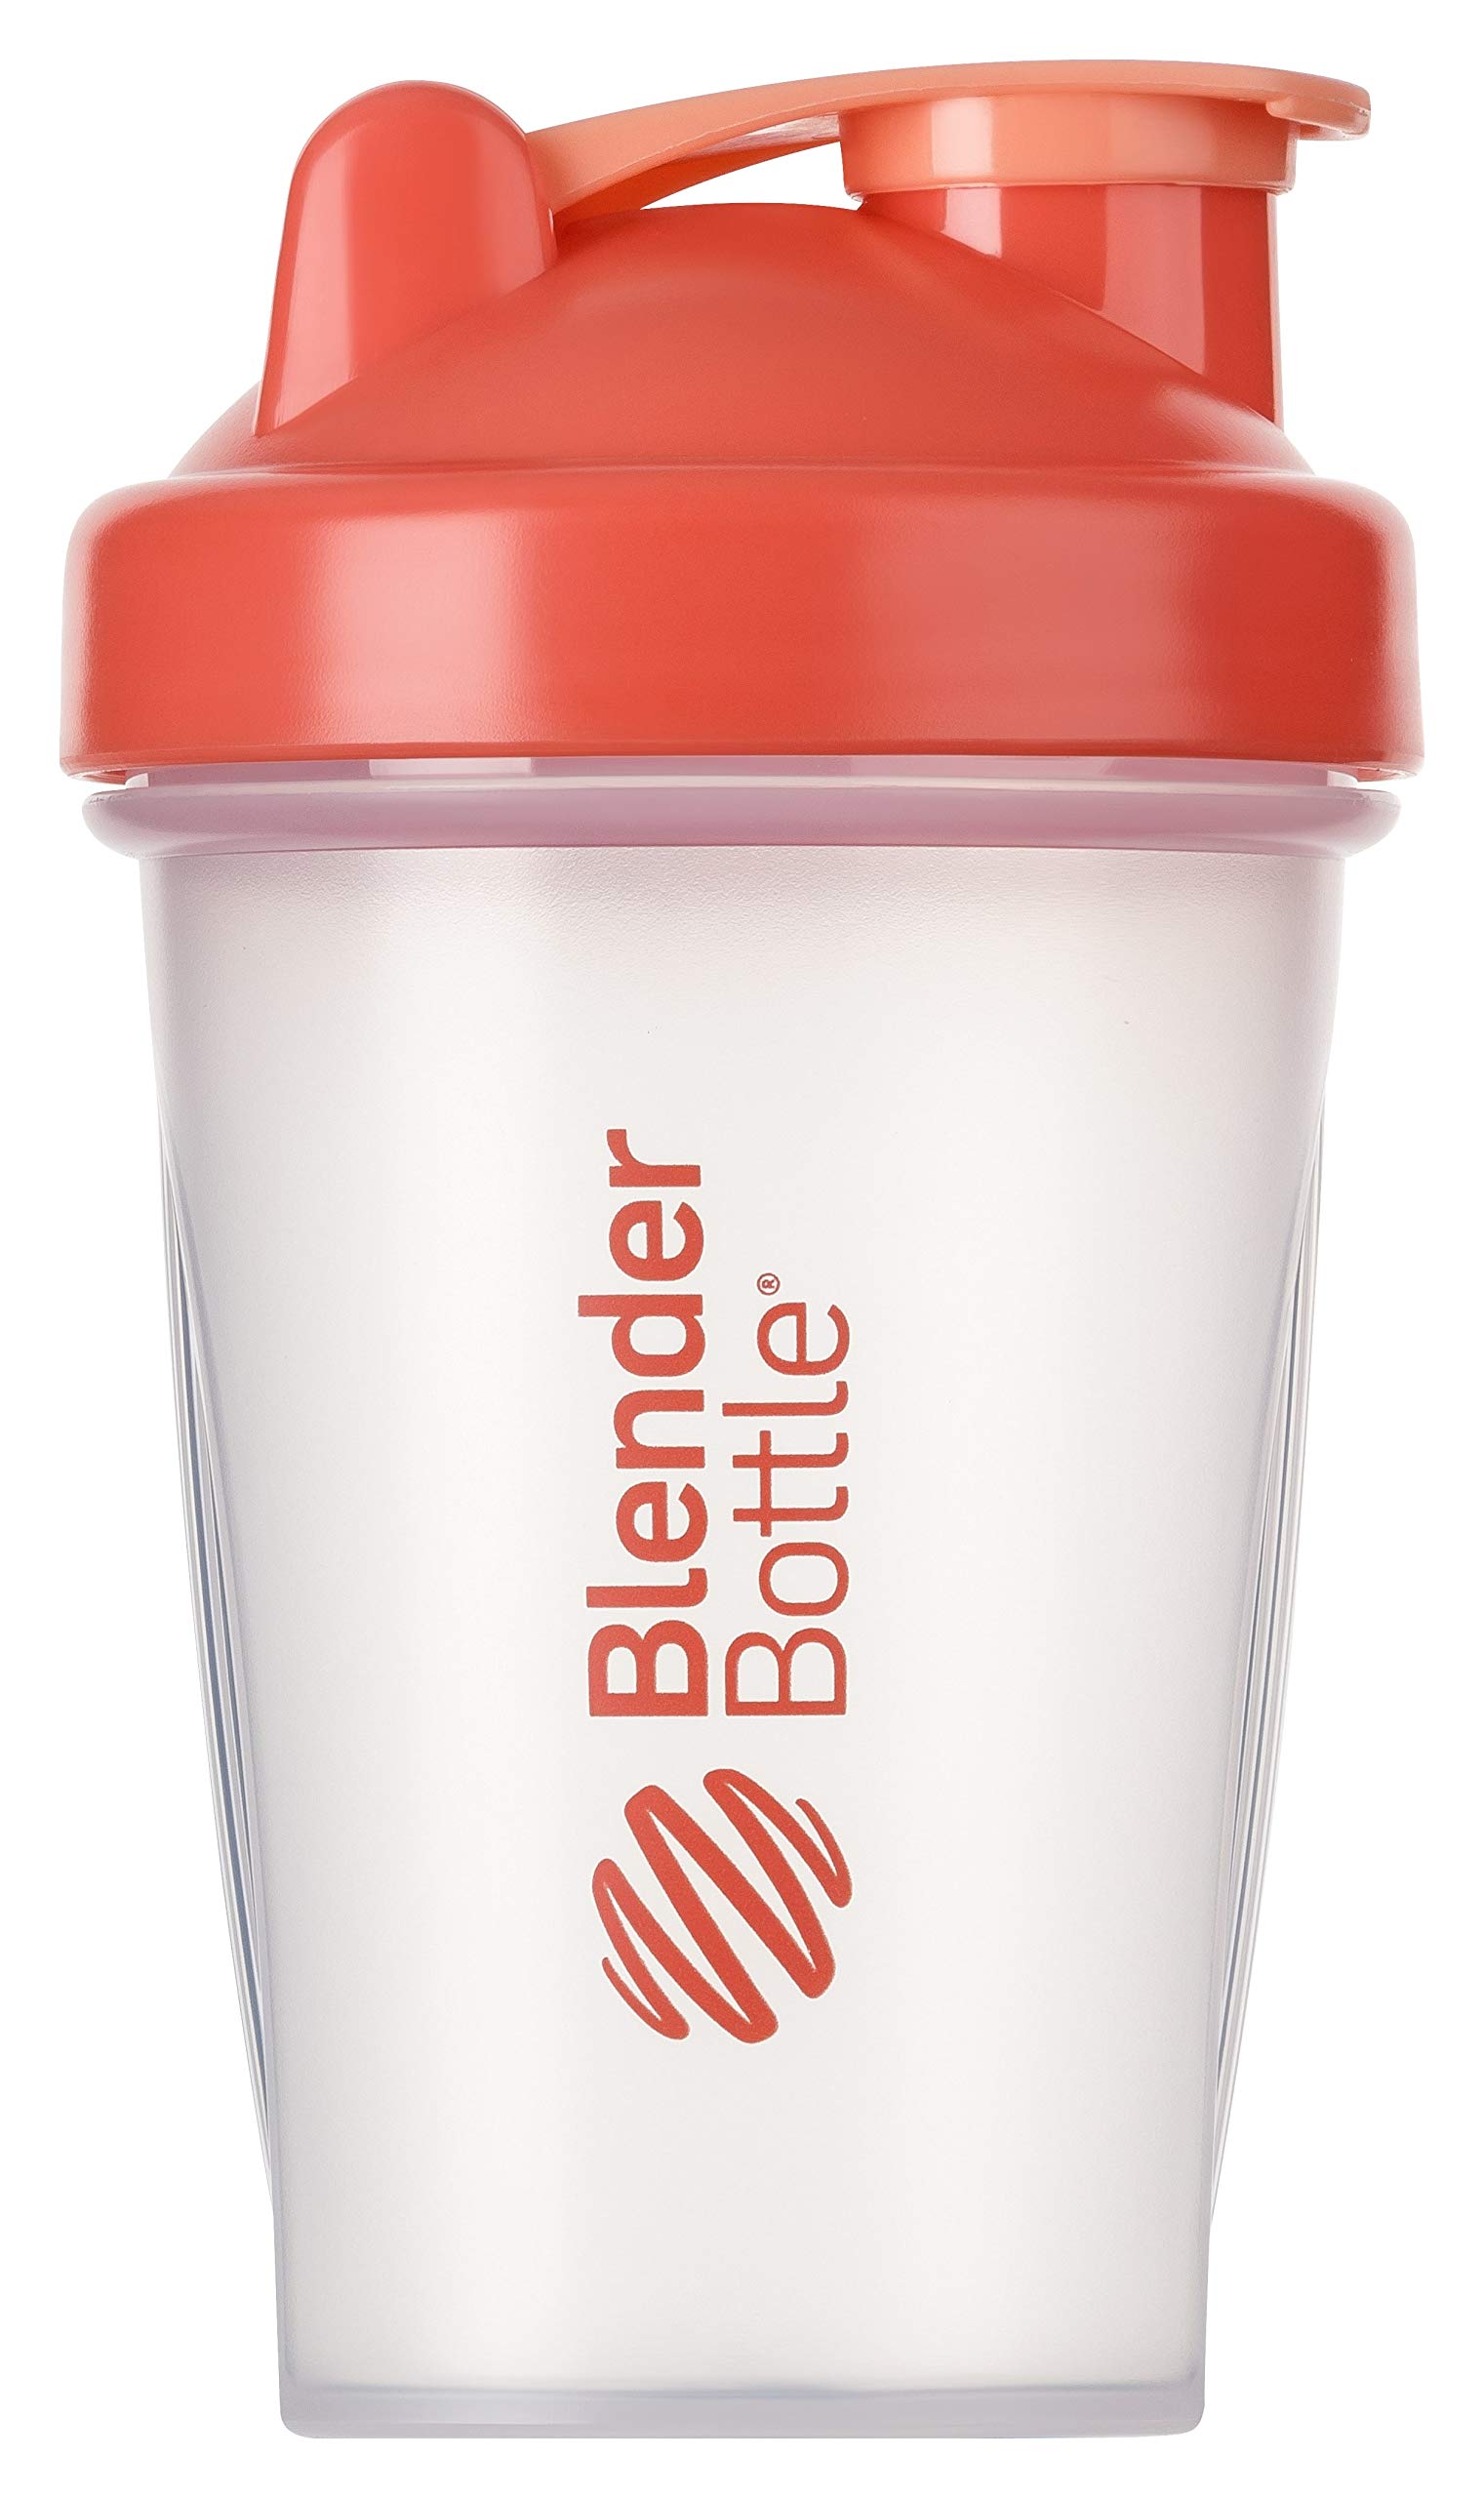 BlenderBottle Classic Shaker mit BlenderBall, optimal geeignet als Eiweiß Shaker, Protein Shaker, Wasserflasche, Trinkflasche, BPA frei, skaliert bis 400 ml, Fassungsvermögen 590 ml, coral transparent